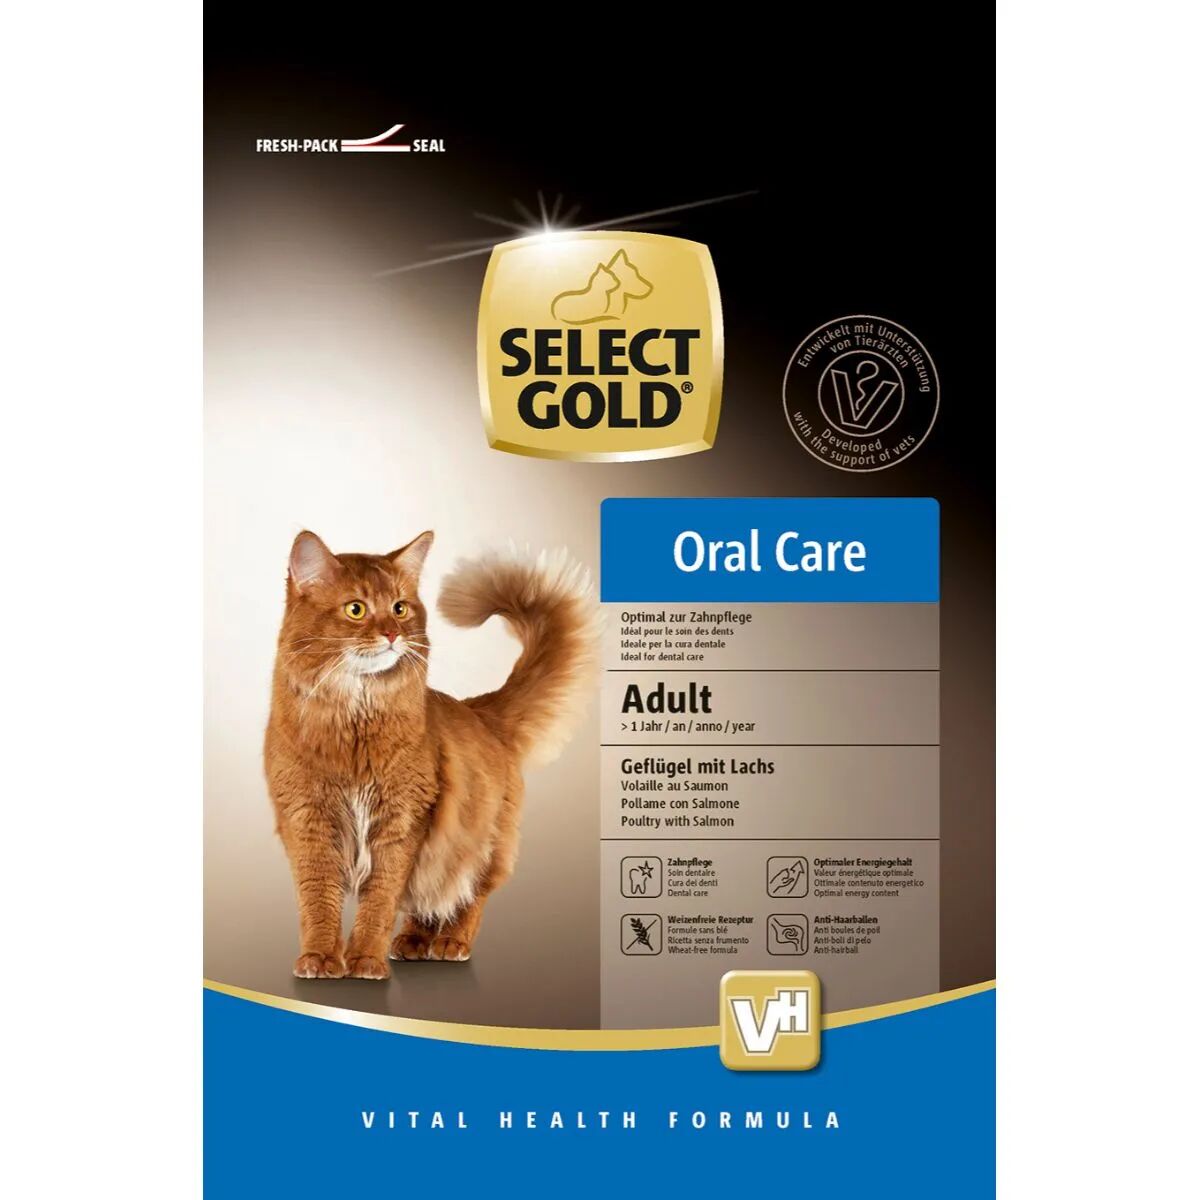 SELECT GOLD Oral Care per Gatto Adult Pollame con Salmone 400G